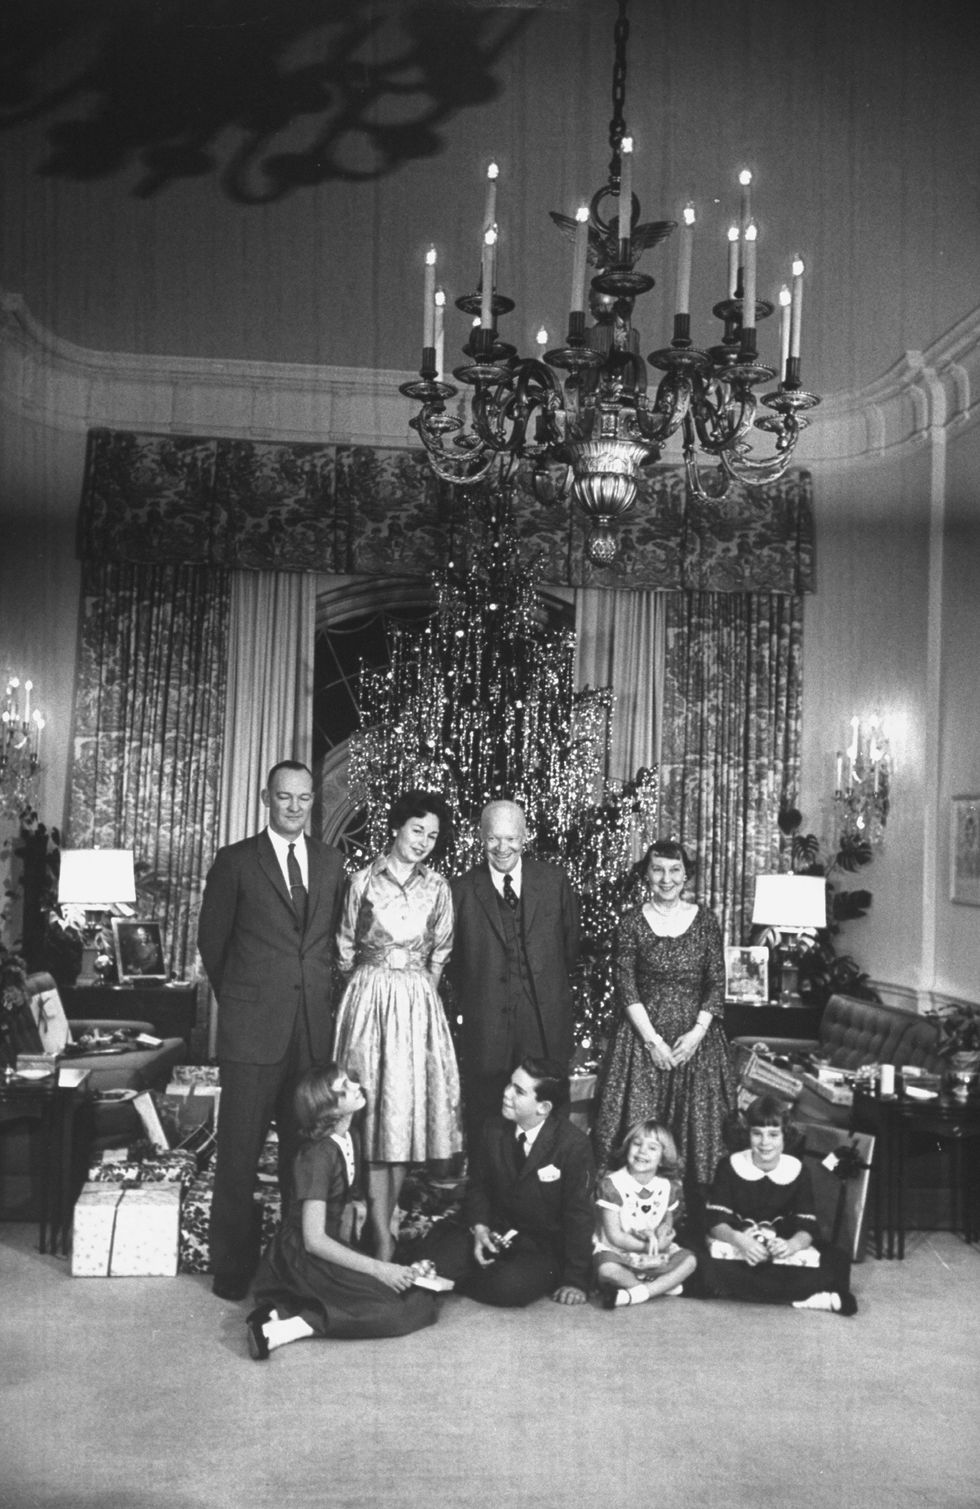 (1960) Gia đình Eisenhower đứng trước cây thông trang trí dây kim tuyến bạc trong năm cuối cùng của họ ở Nhà Trắng. Ảnh: Getty Images.